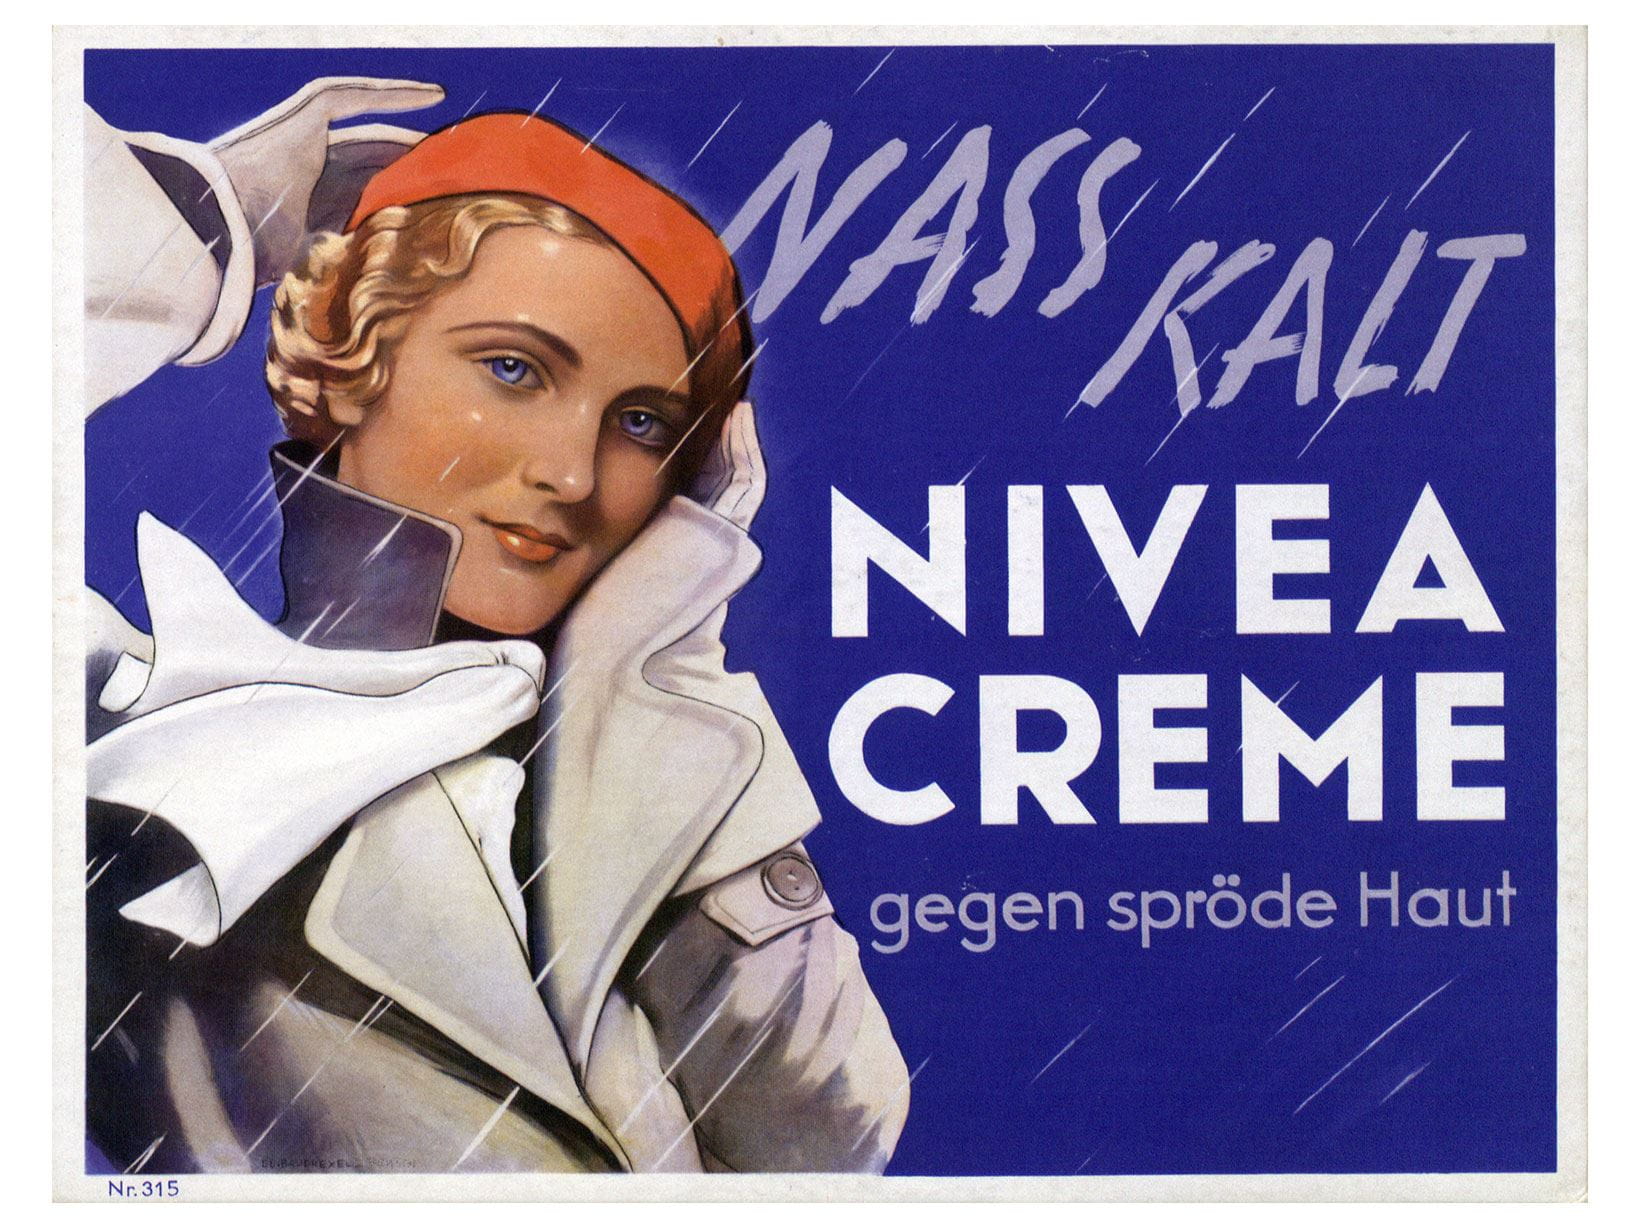 NIVEA Werbeplakat von 1935: NIVEA Creme gegen spröde Haut